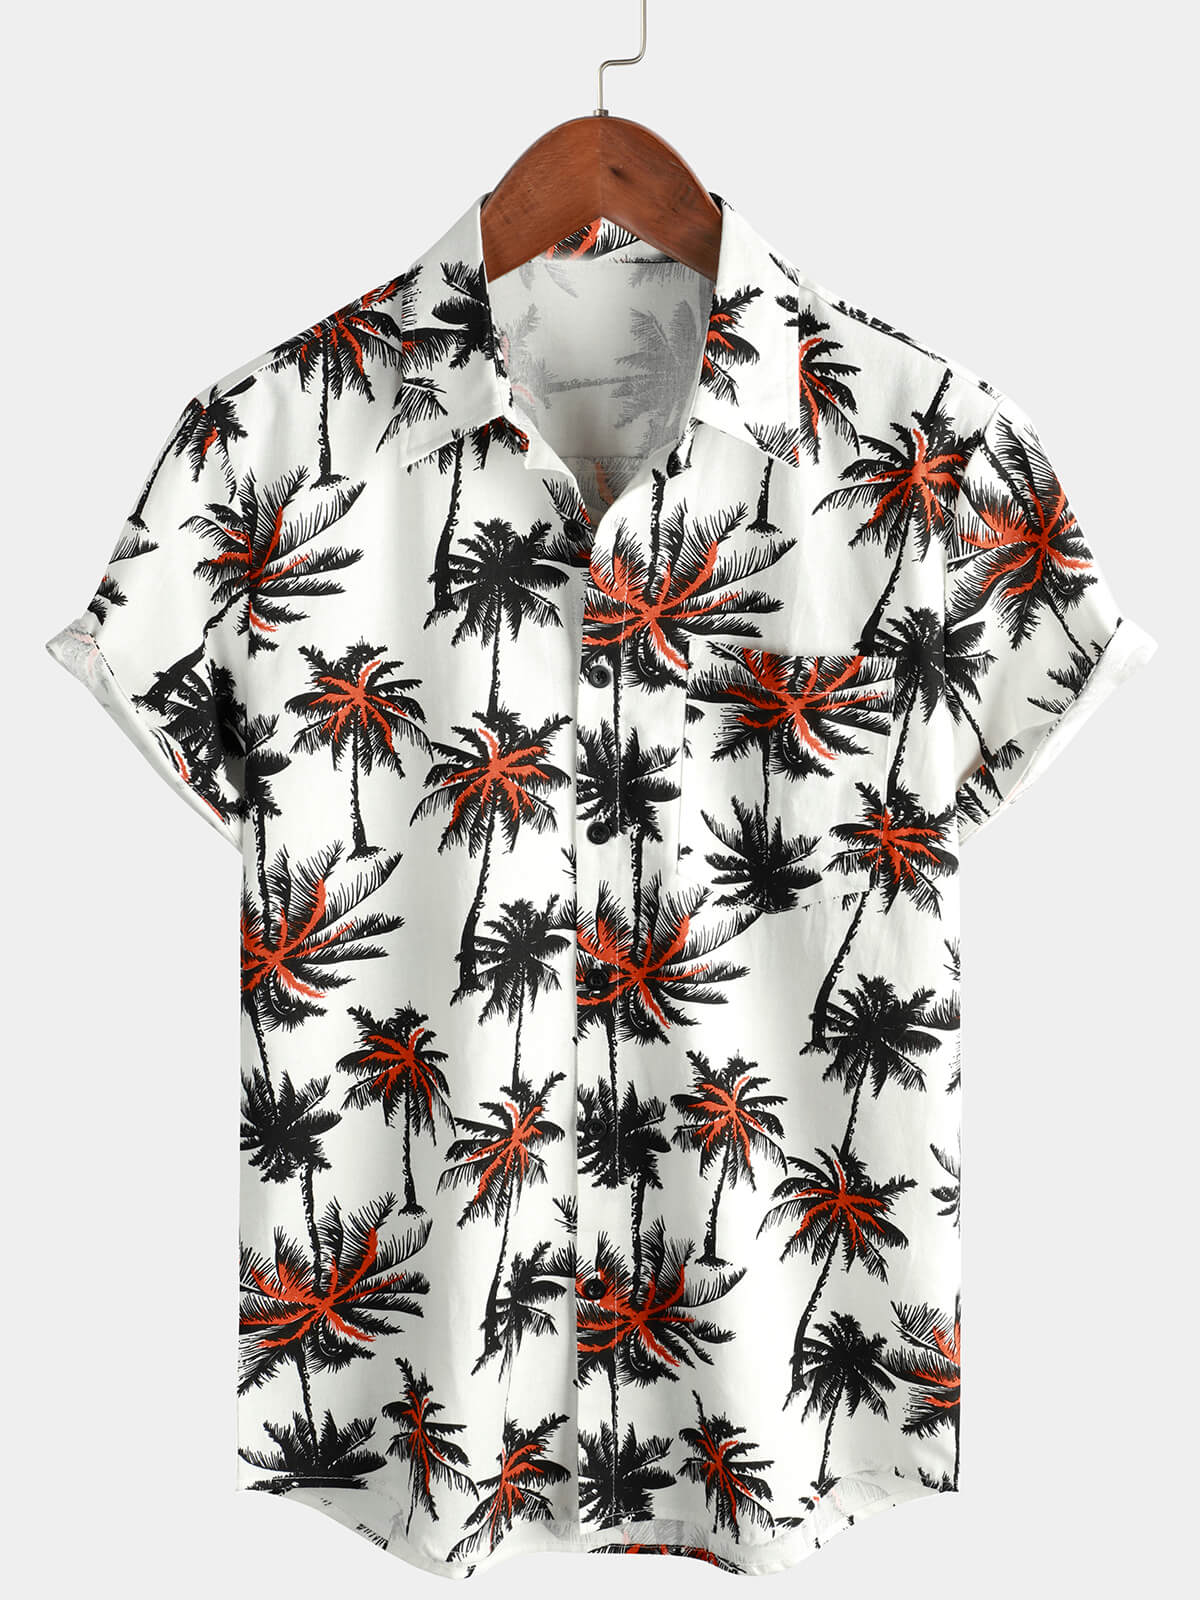 Chemise boutonnée à manches courtes en coton et lin imprimé noix de coco tropicale pour hommes